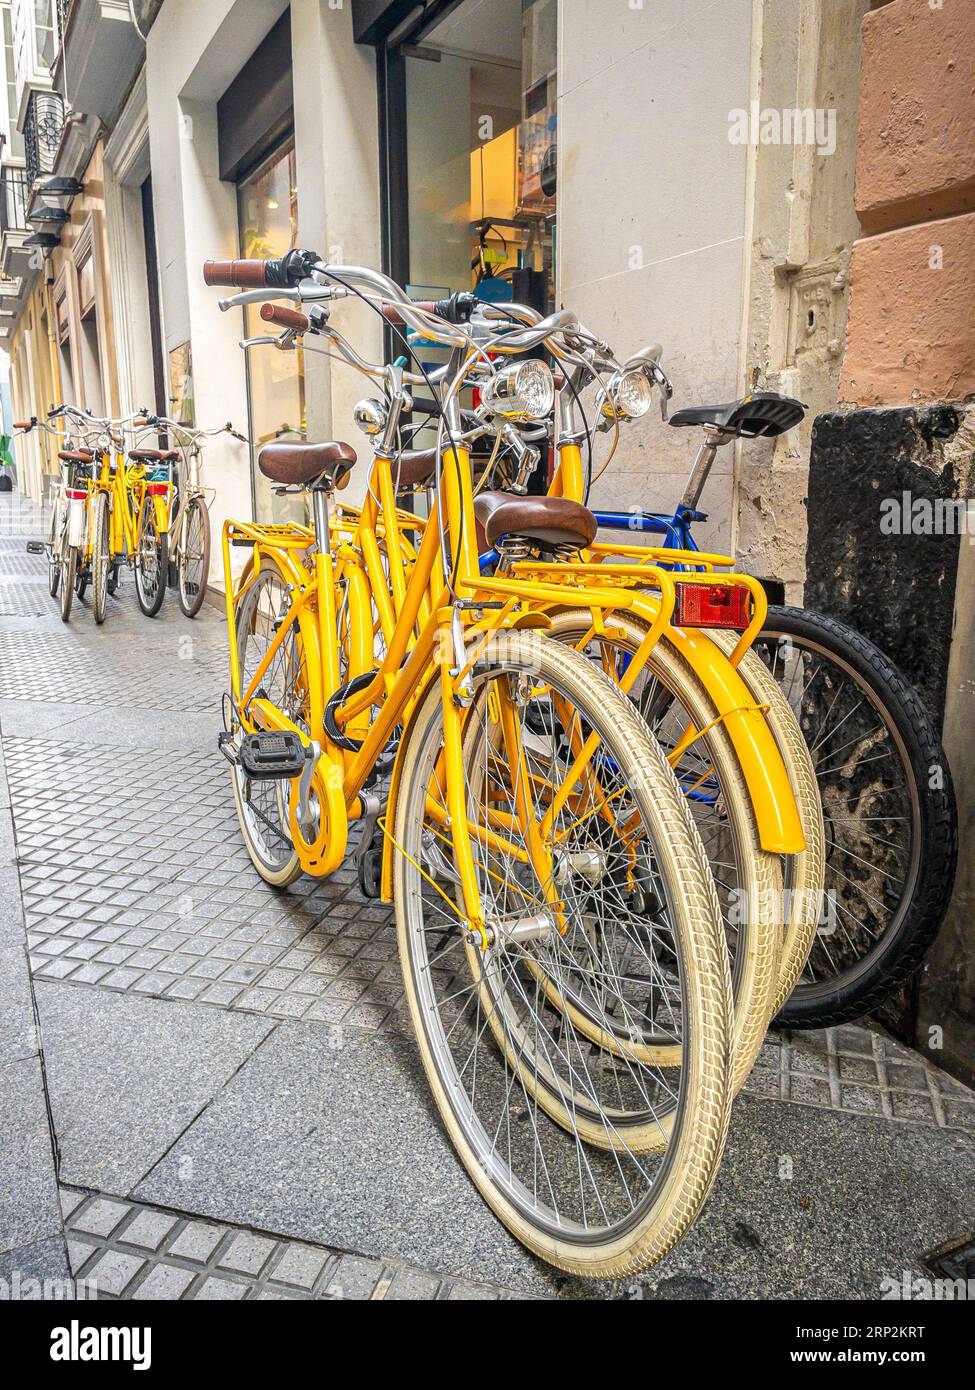 Groupe de vélos jaunes à louer devant un magasin de location de vélos sur une rue européenne. Banque D'Images